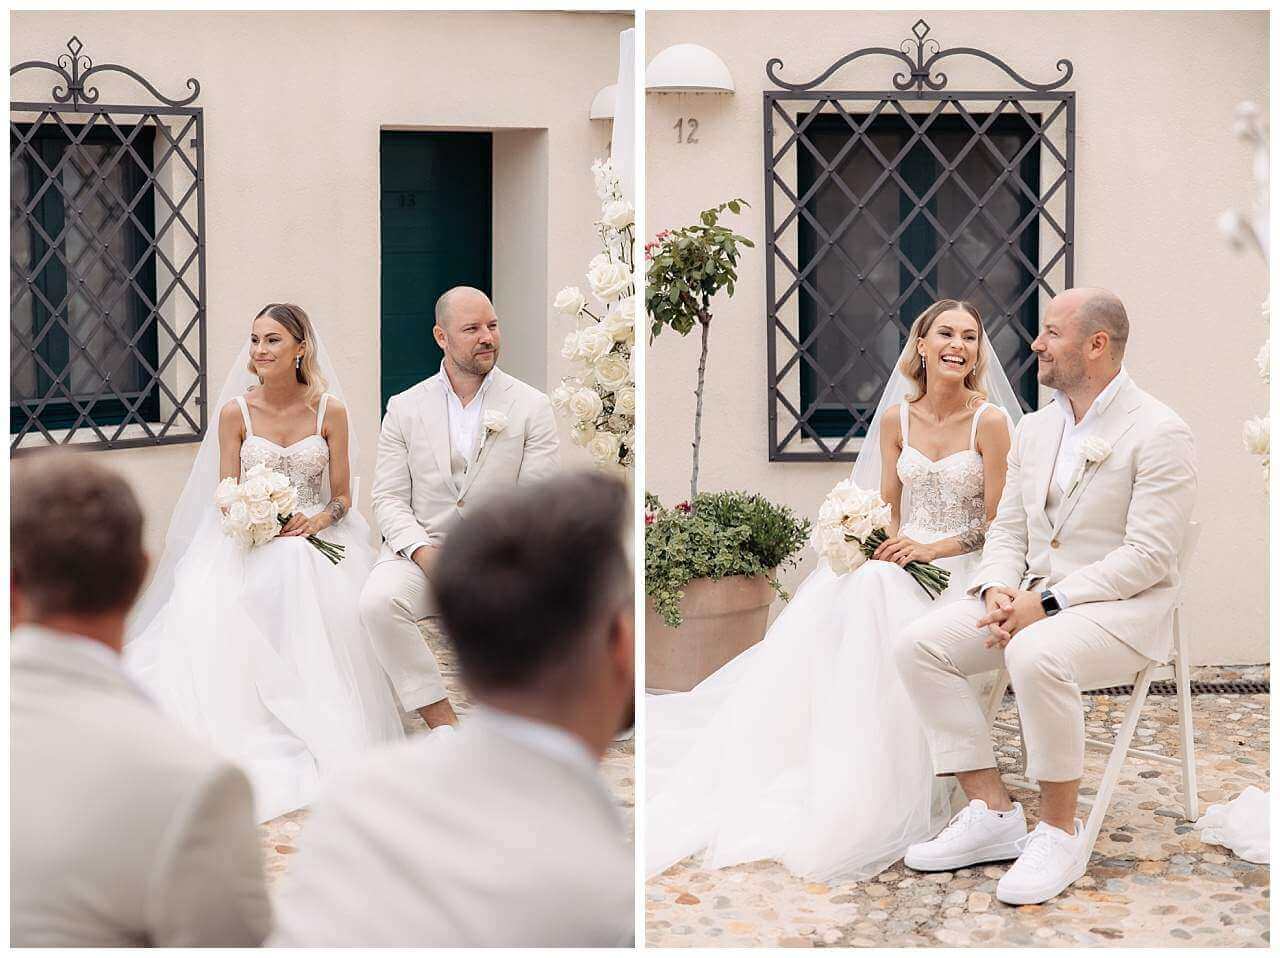 Brautpaar Reaktionen bei freie Trauung in Kastell in Kroatien